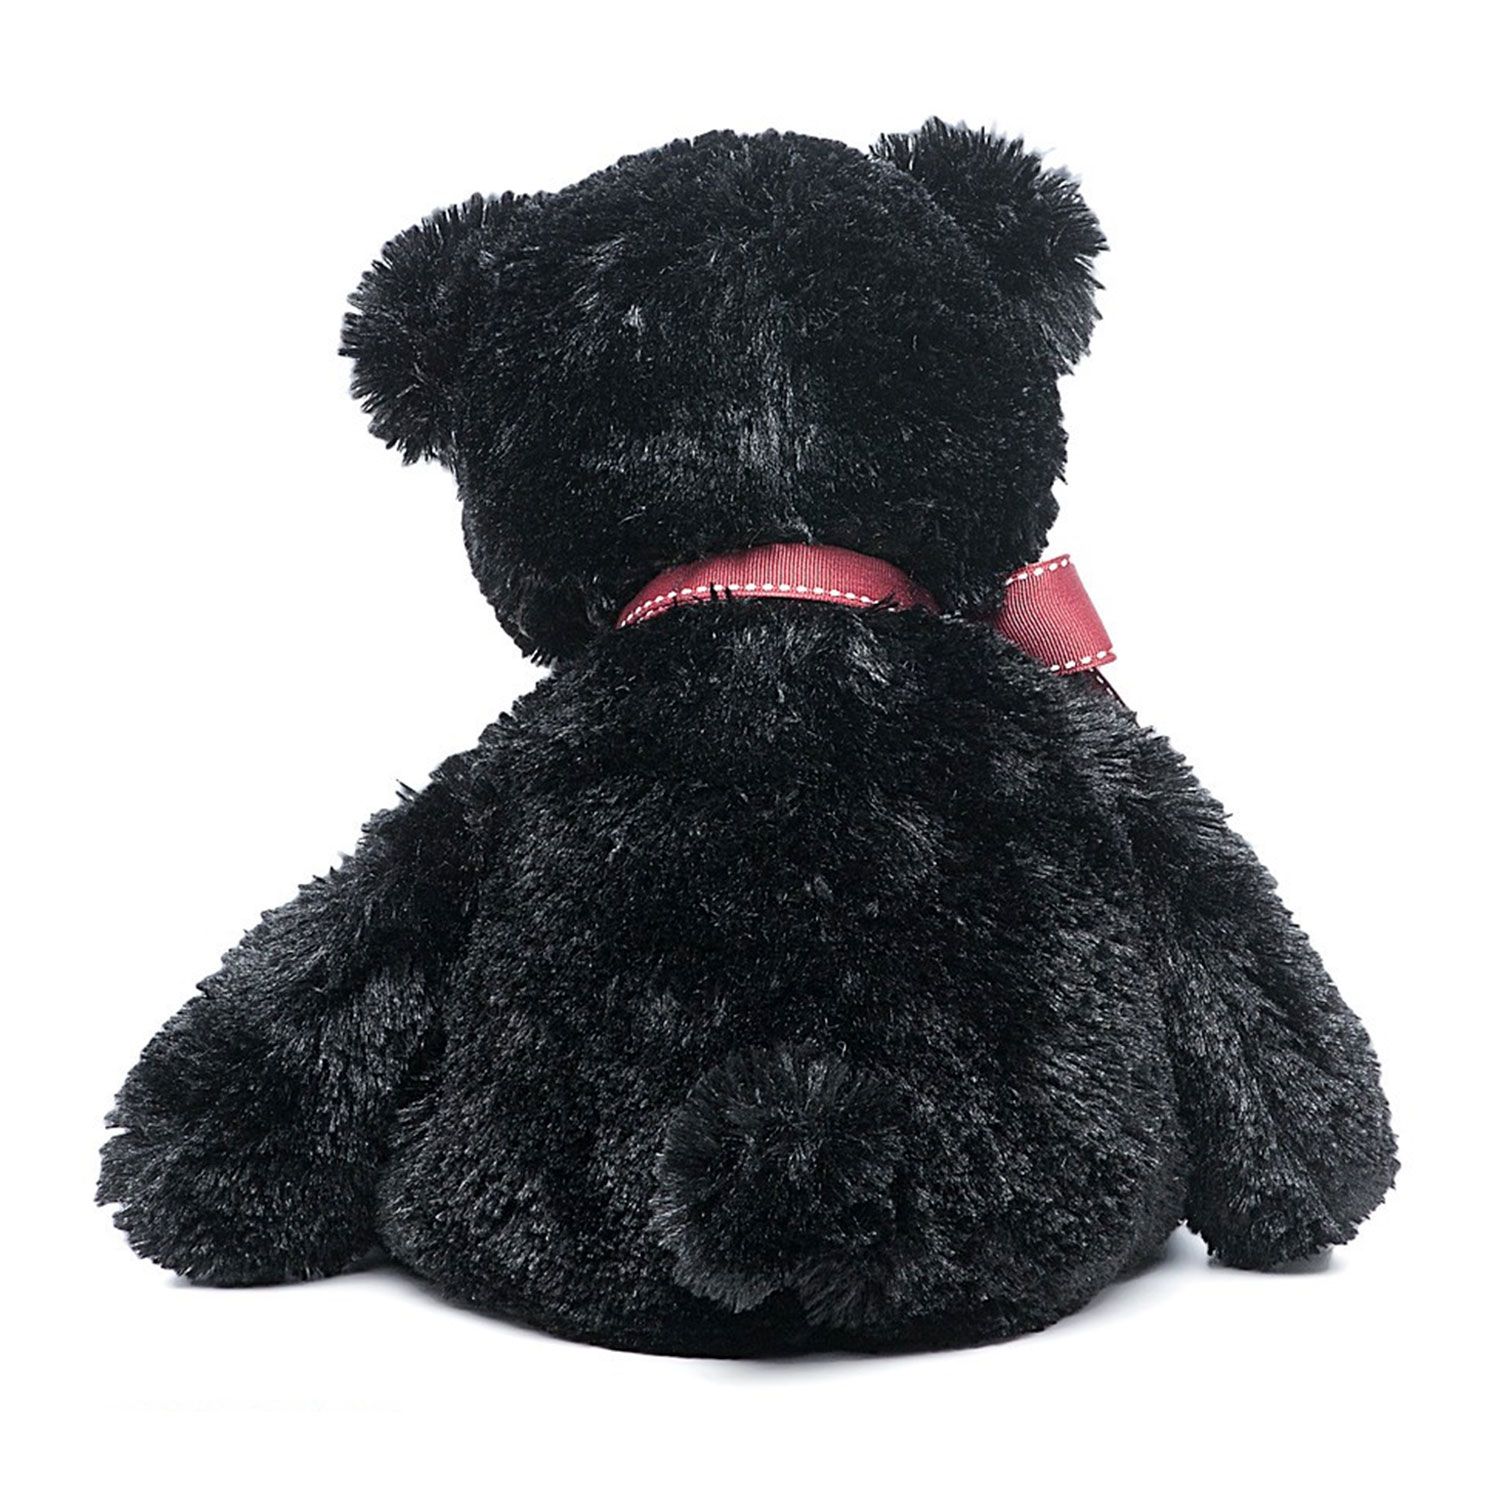 Черно плюшевая. Мягкая игрушка Aurora медведь чёрный 70 см. Мягкая игрушка Aurora 41-103 медведь чёрный 70 см. Aurora мягкие игрушки медведь черный.